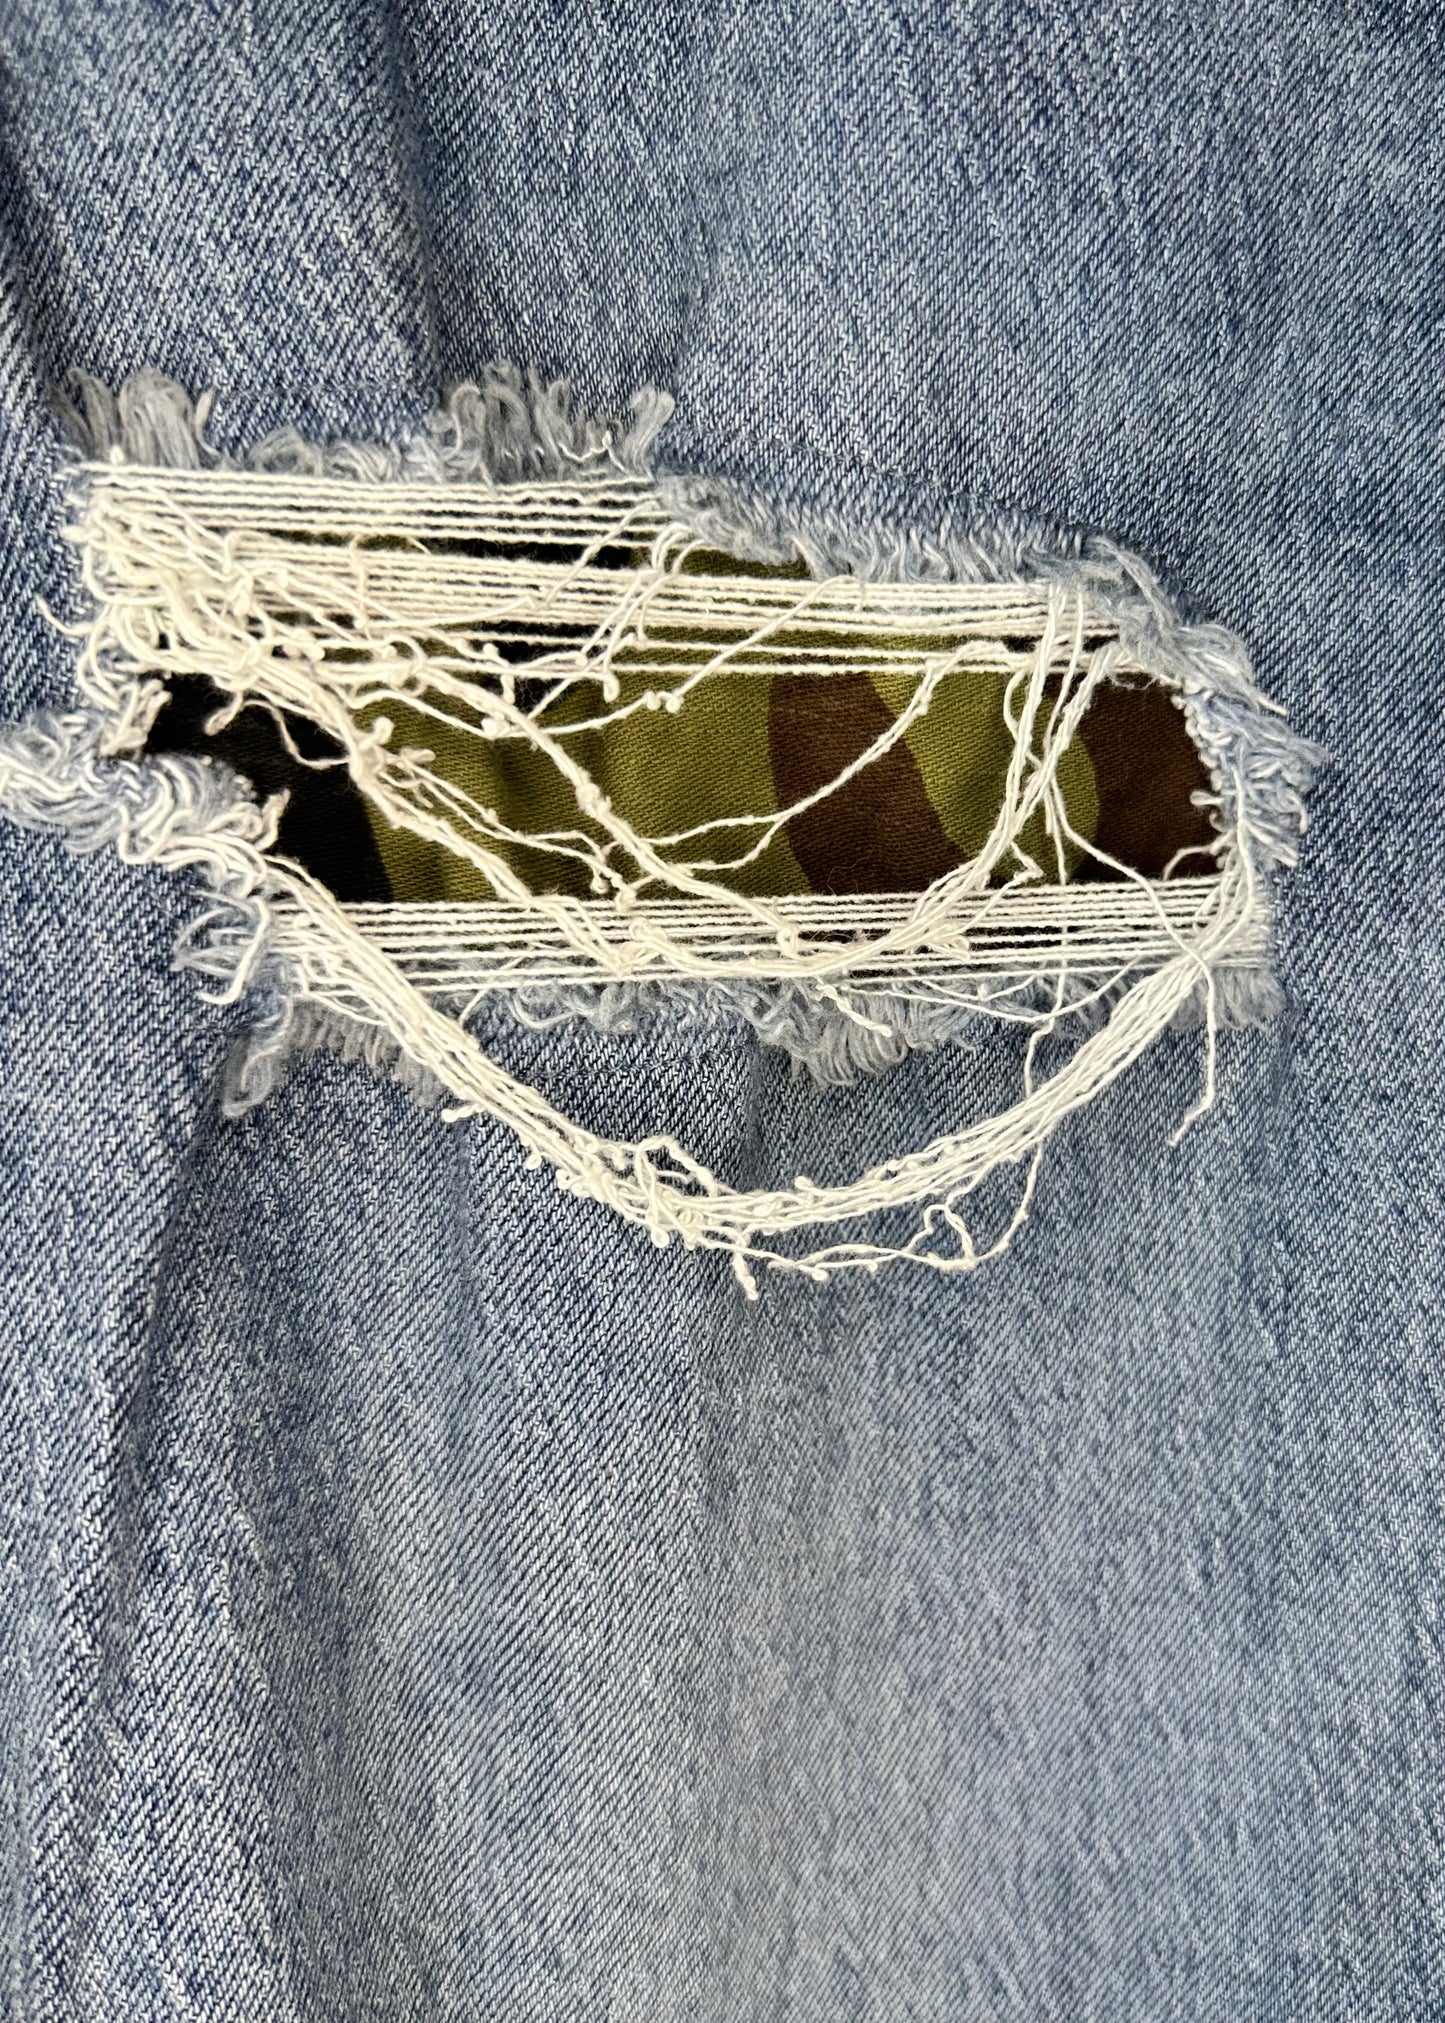 Distressed Camo Patch Levi Jeans